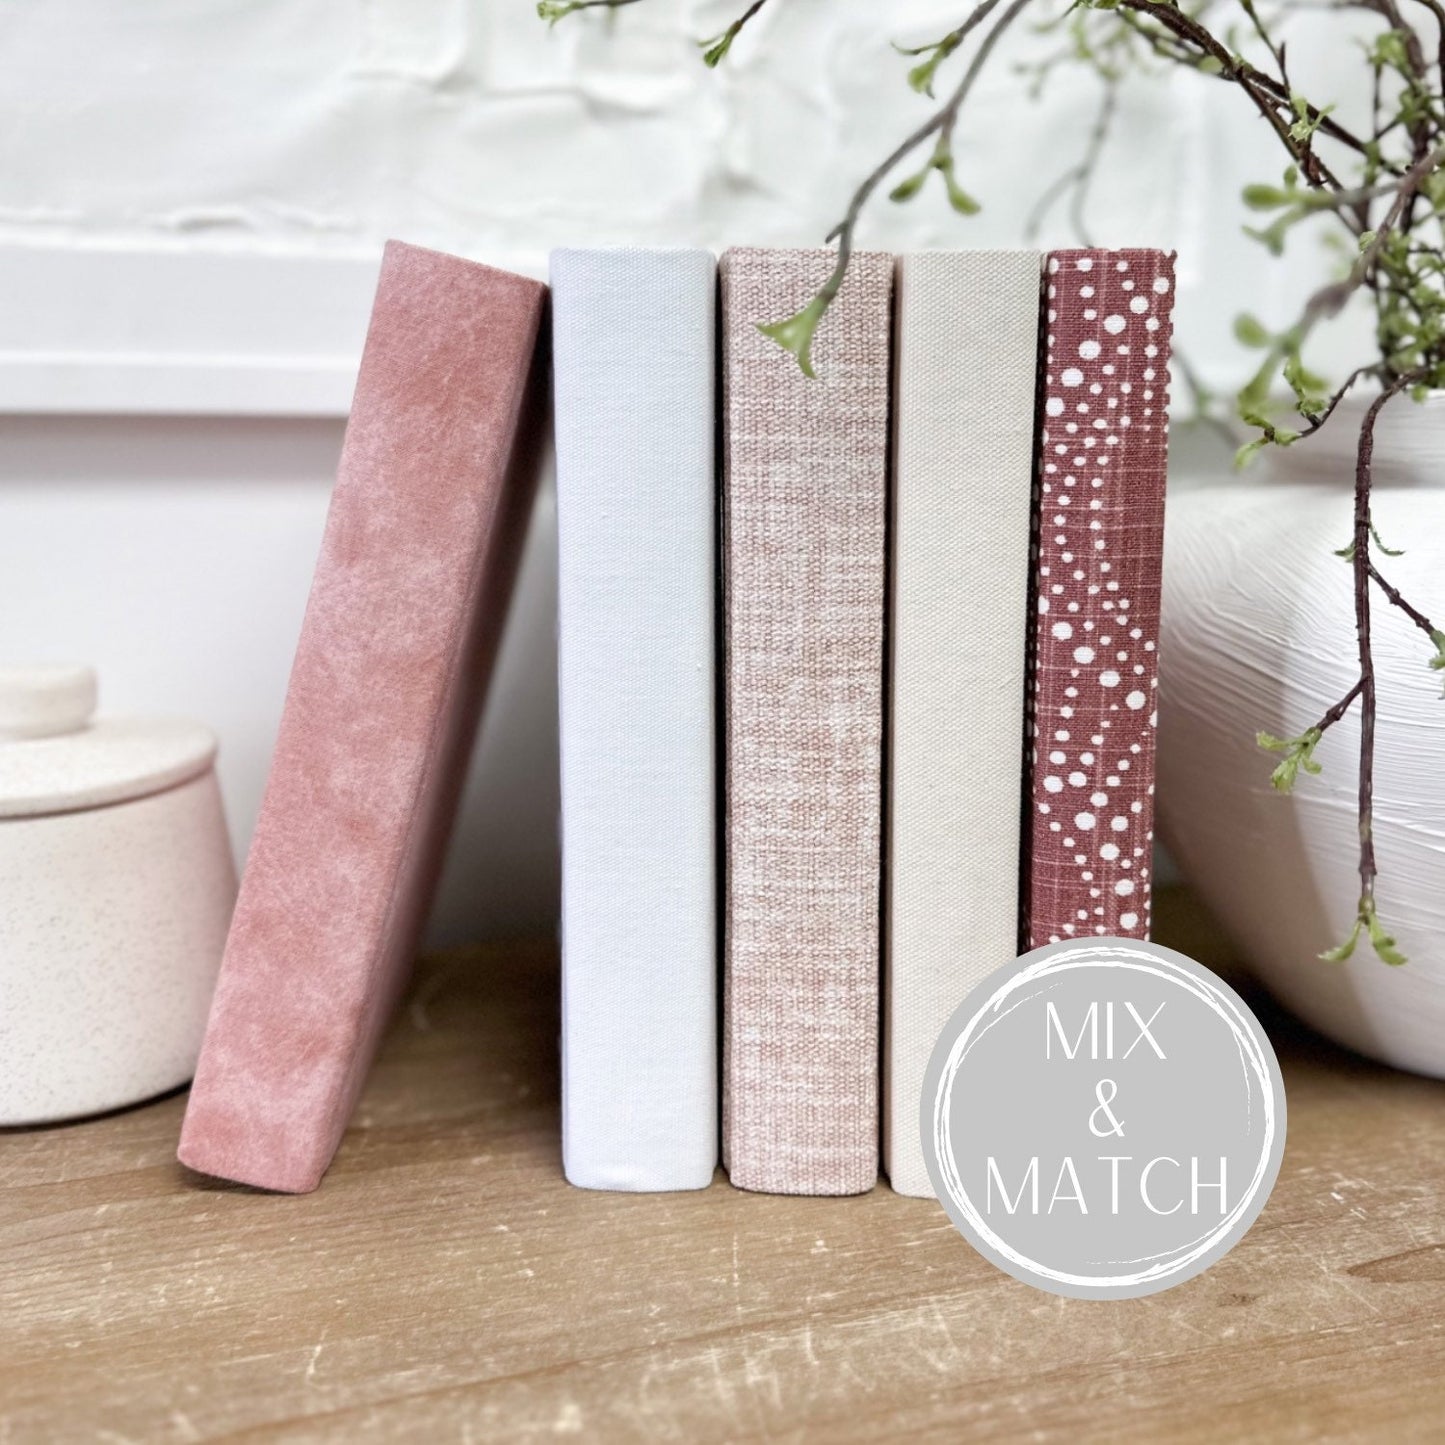 Blush Decorative Books for Shelf Decor, Fabric Wrapped, Designer Books, Book Set